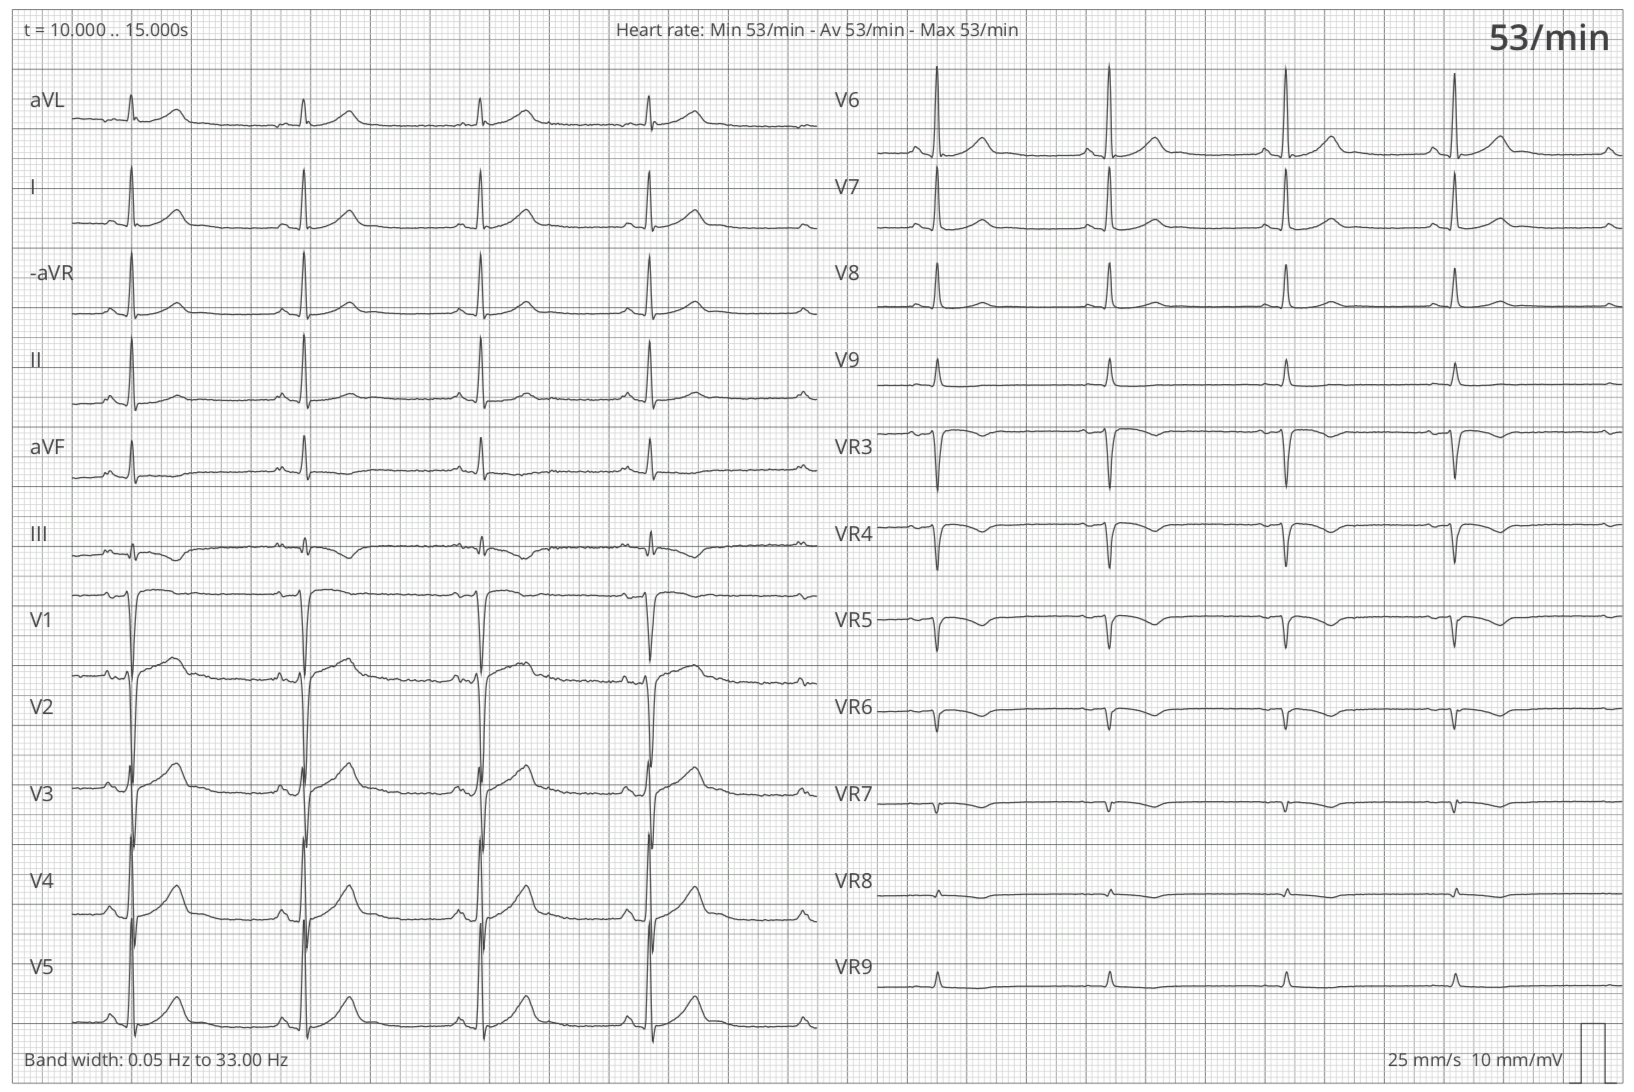 Graph der Ableitungen (I, II, III, aVR, aVL, aVF, V1-V9, VR2-VR9) eines 12 Kanal-EKGs